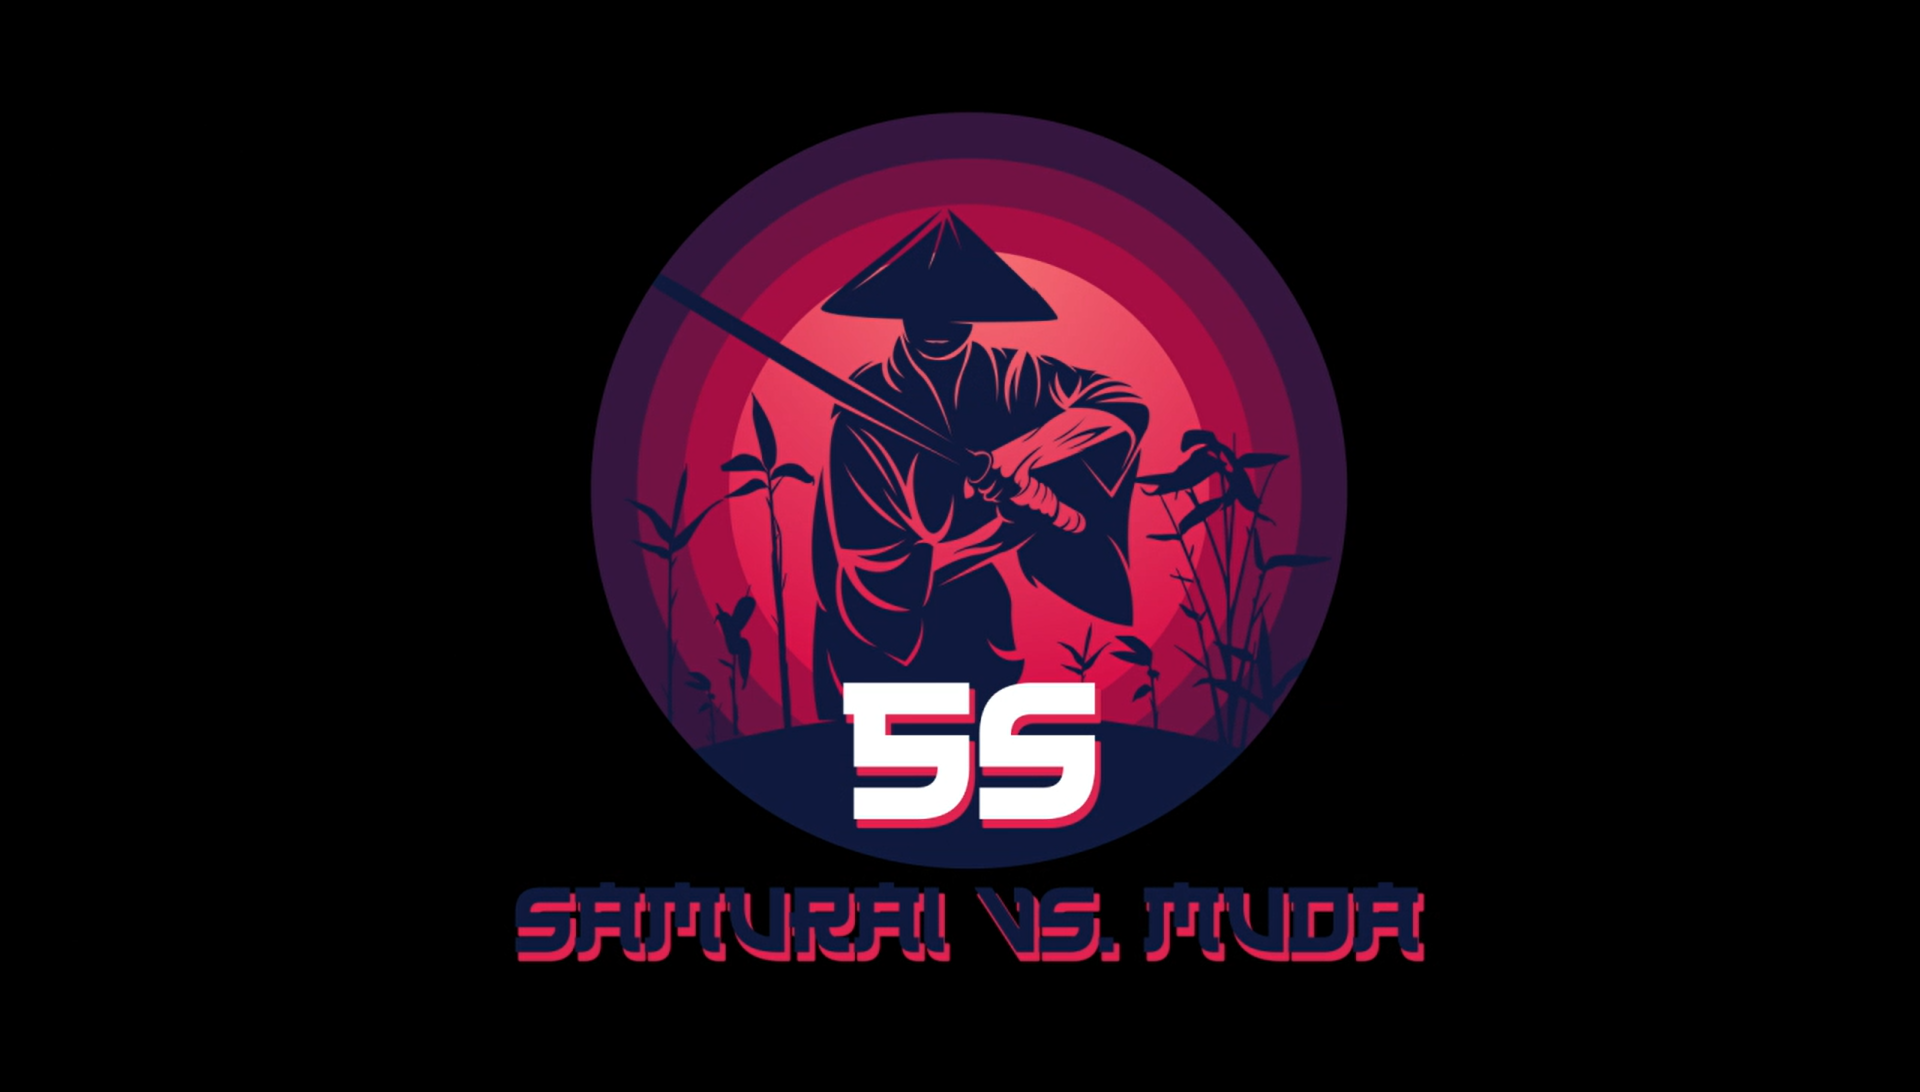 5S - Samuraj vs. Muda